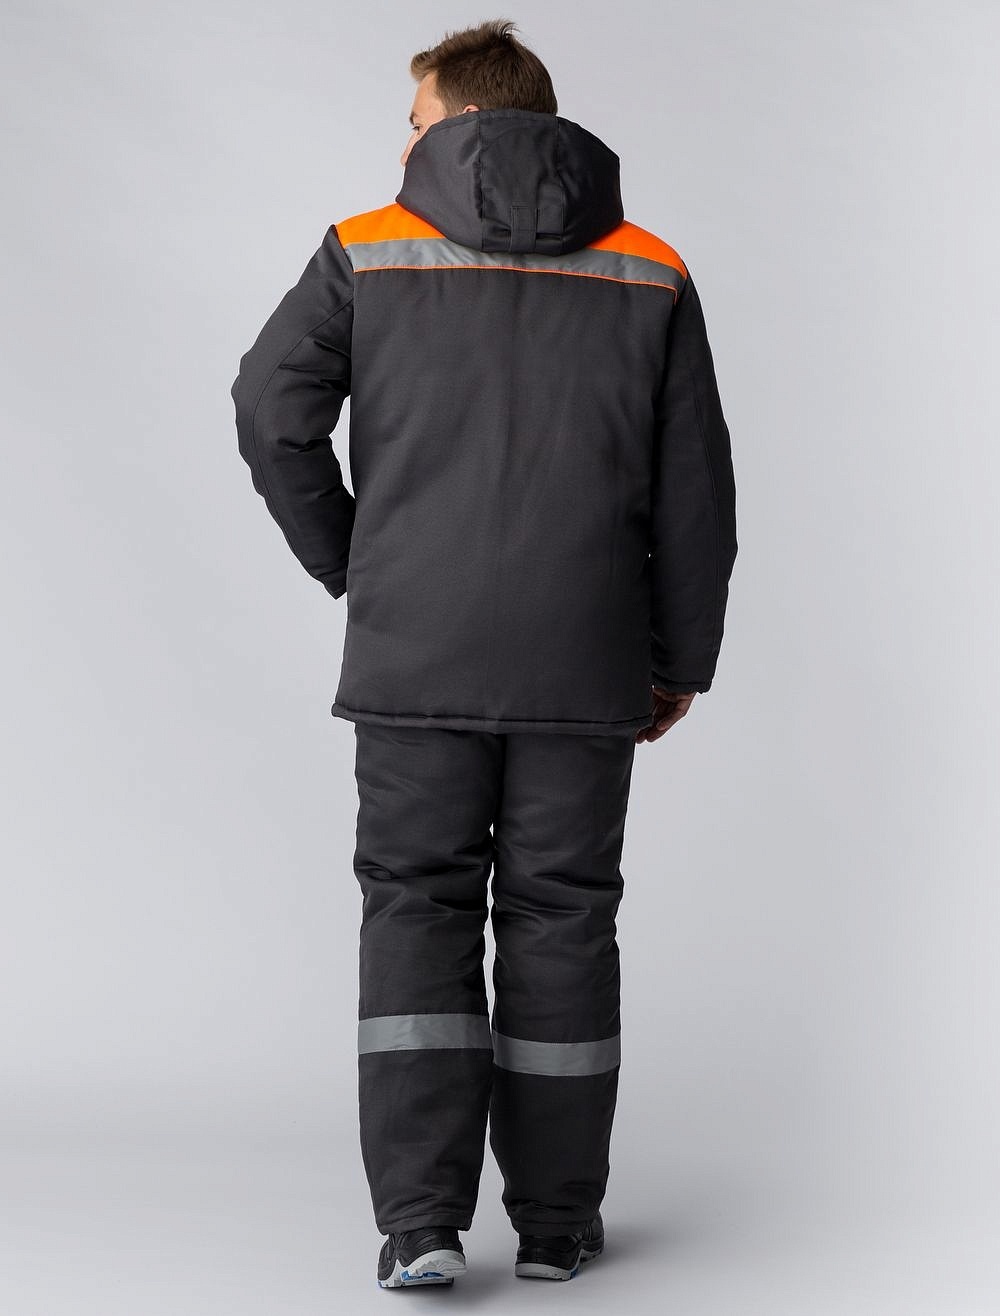 Куртка зимняя Экспертный-Люкс, т.серый/оранжевый